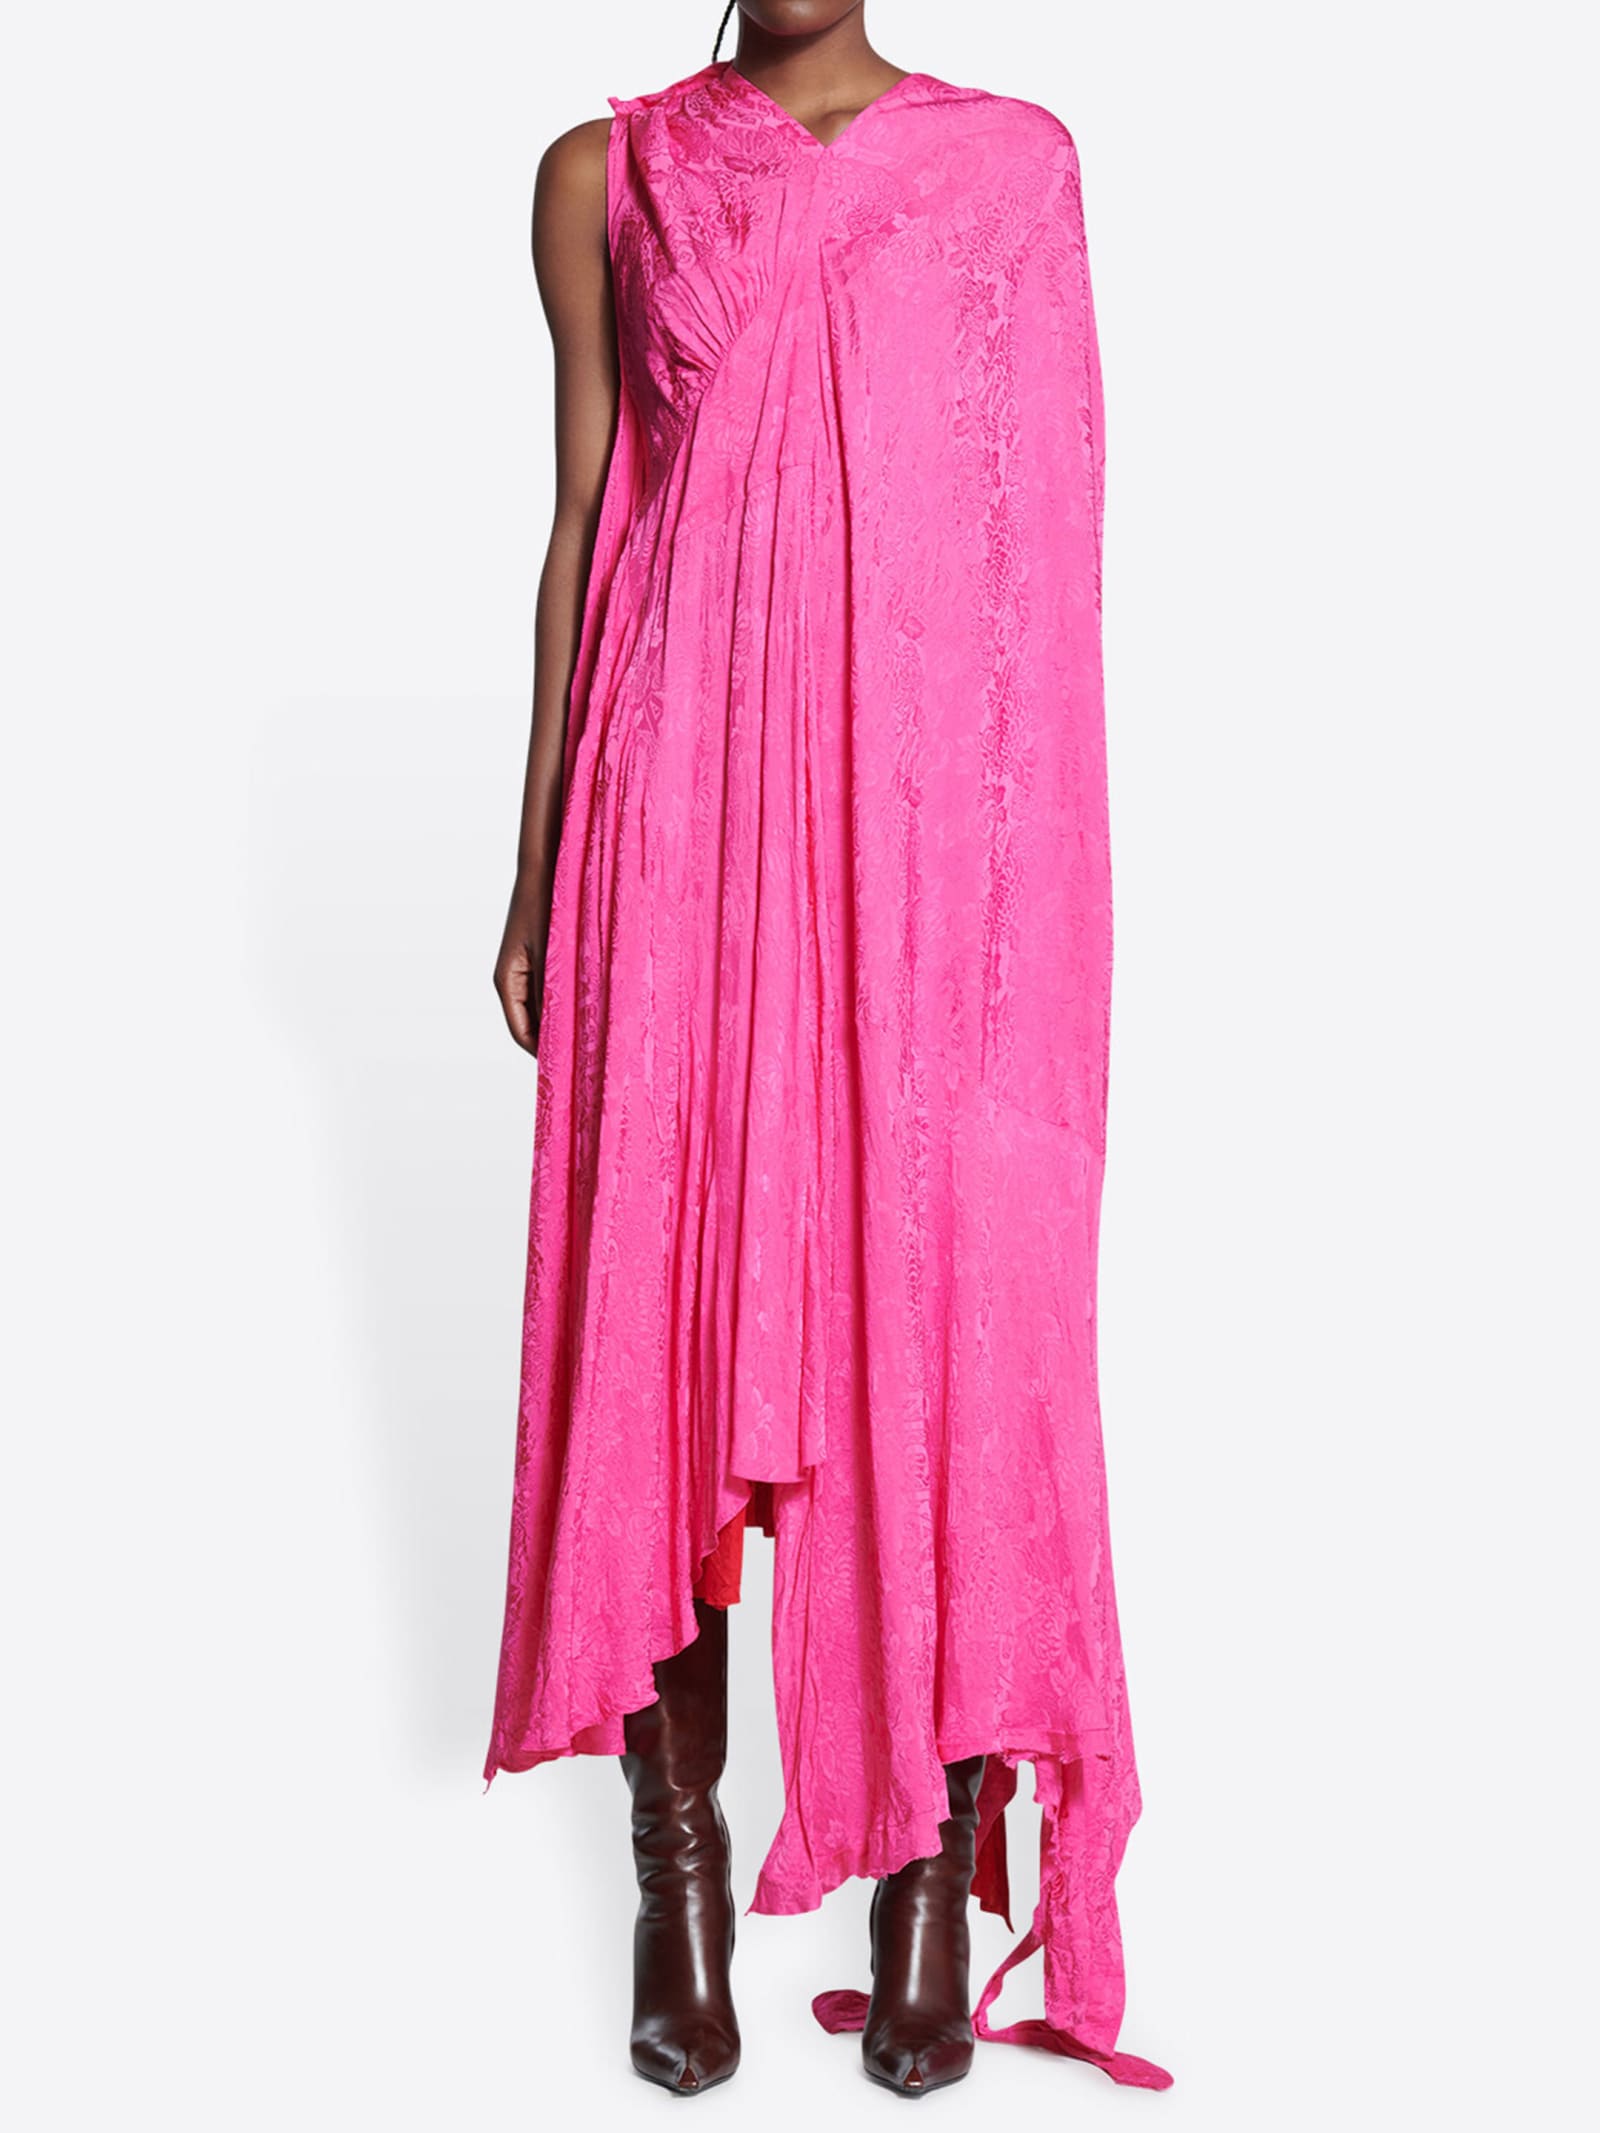 Balenciaga Asymmetric Pink Dress